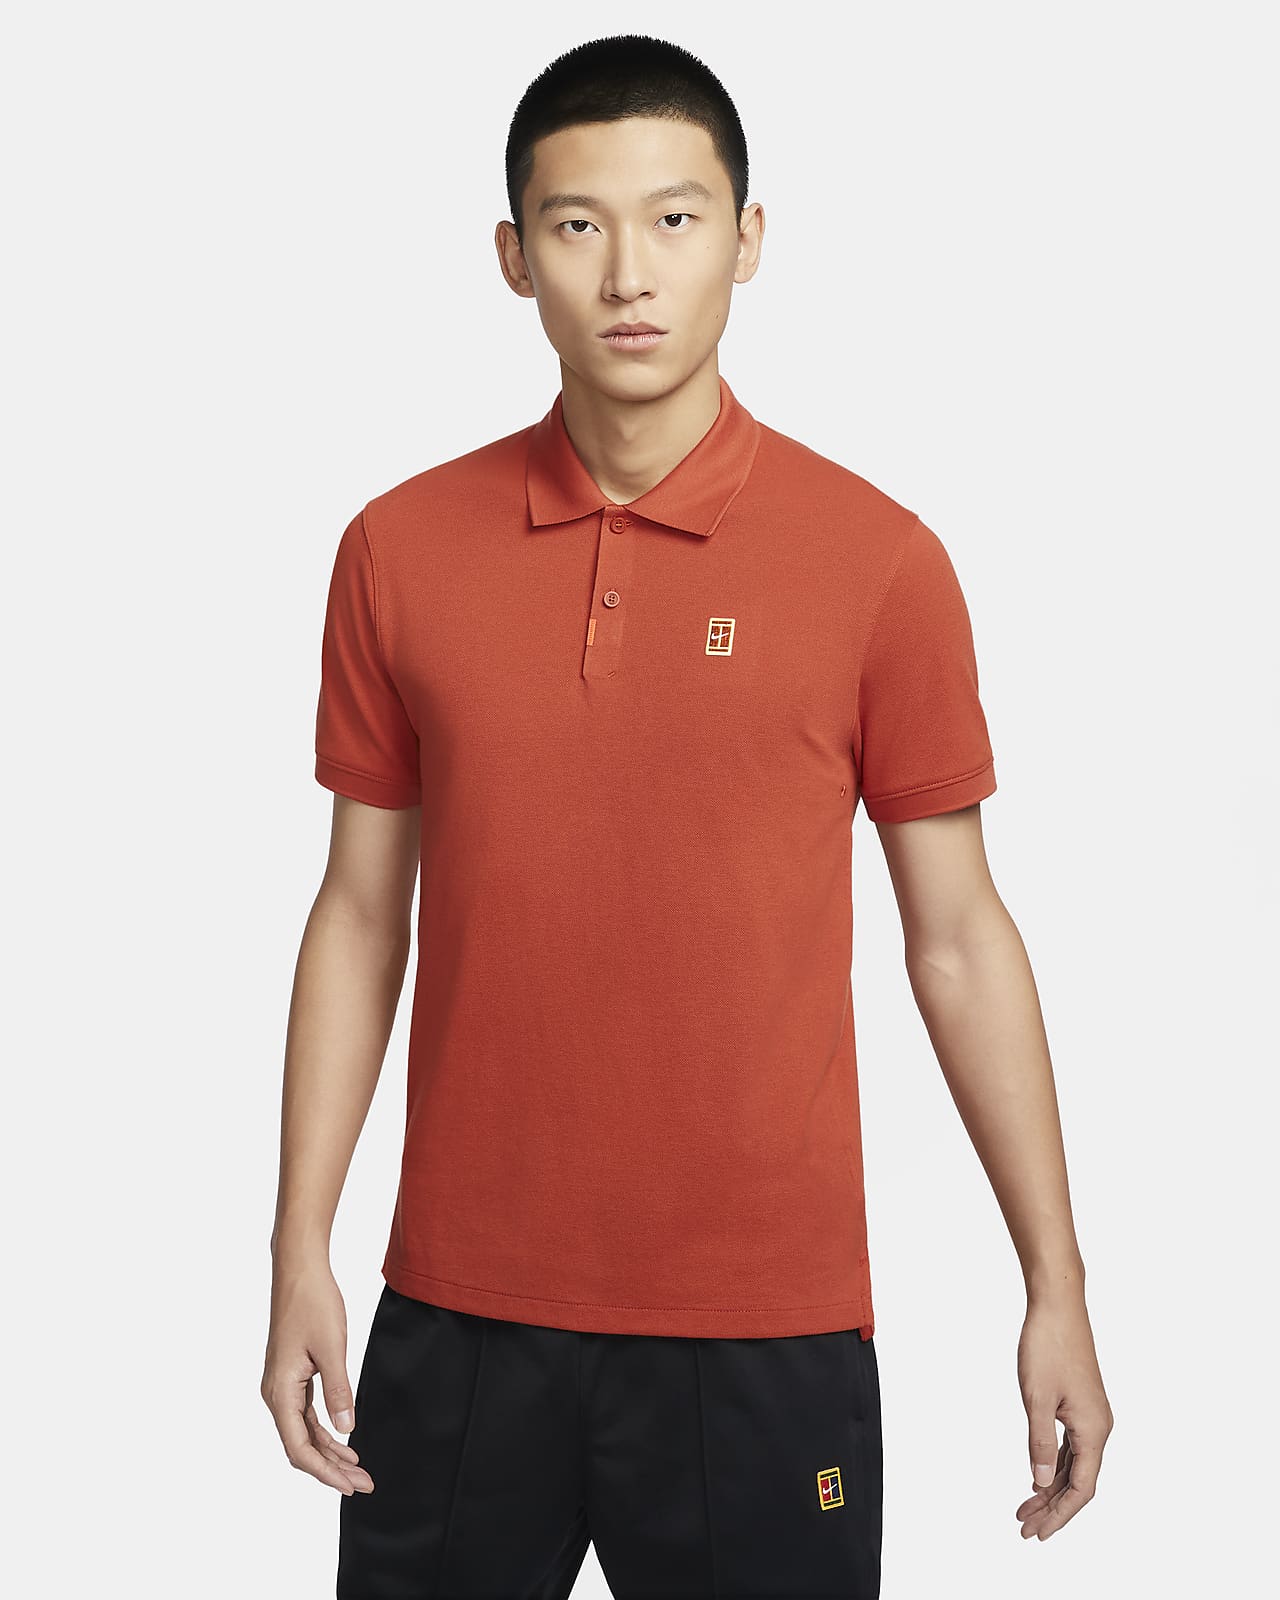 Nike polo 男子速干修身版型翻领T恤